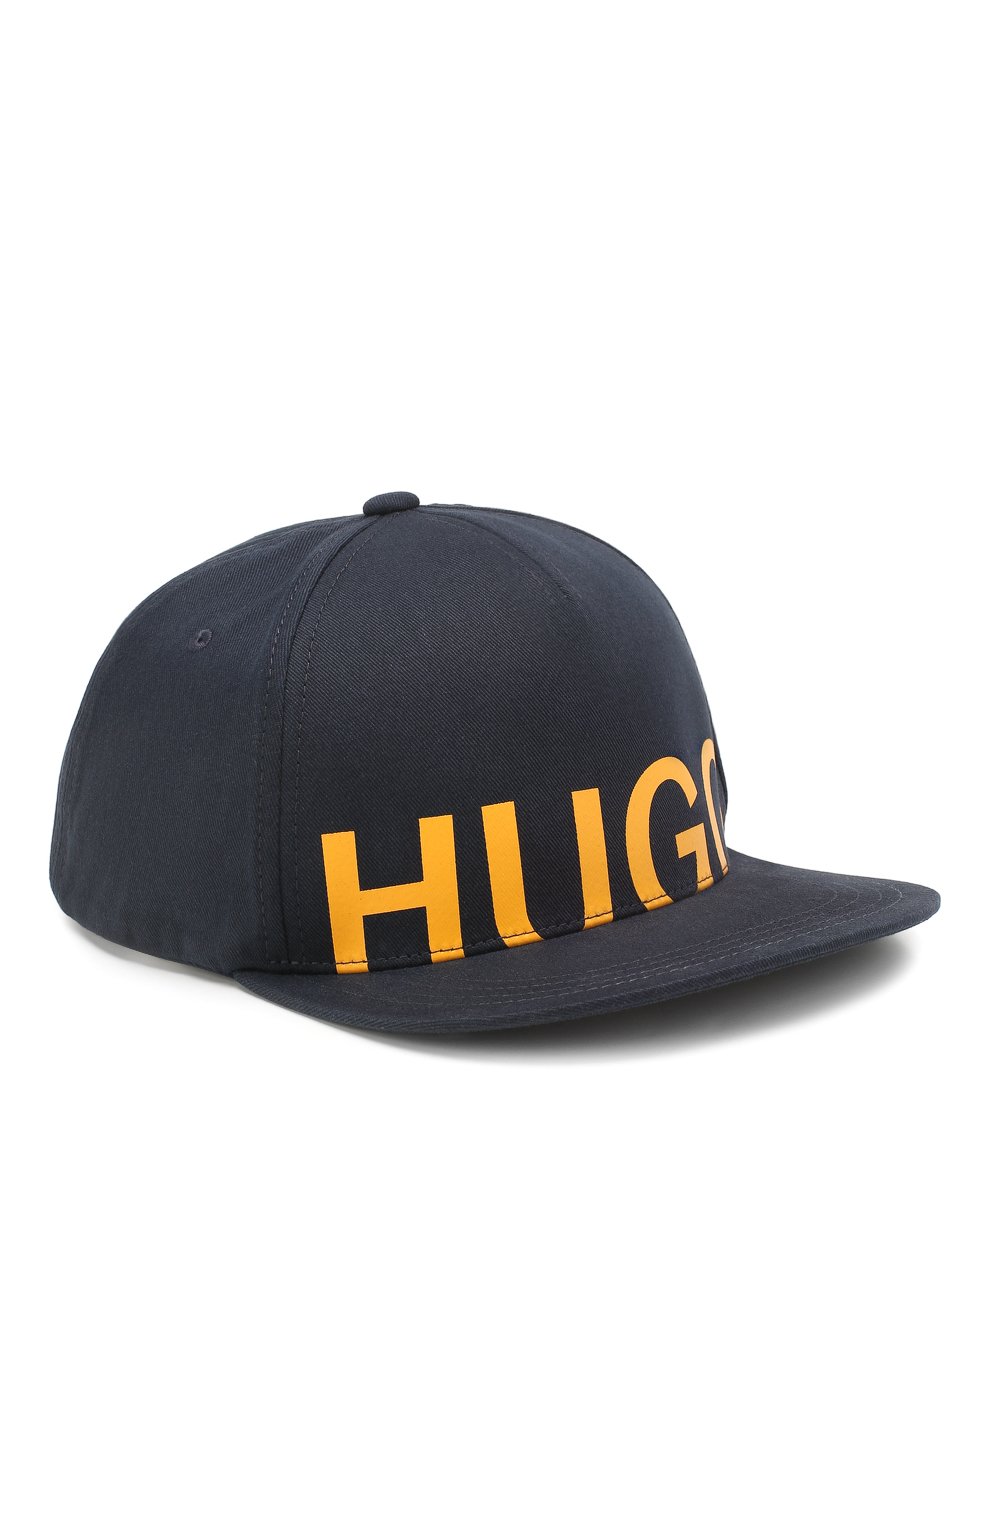 Цум кепка. Кепка Hugo Boss 2021. Hugo Boss кепка мужская. Хуго босс кепка с прямым козырьком. Кепка Boss Hugo Boss черная черная.